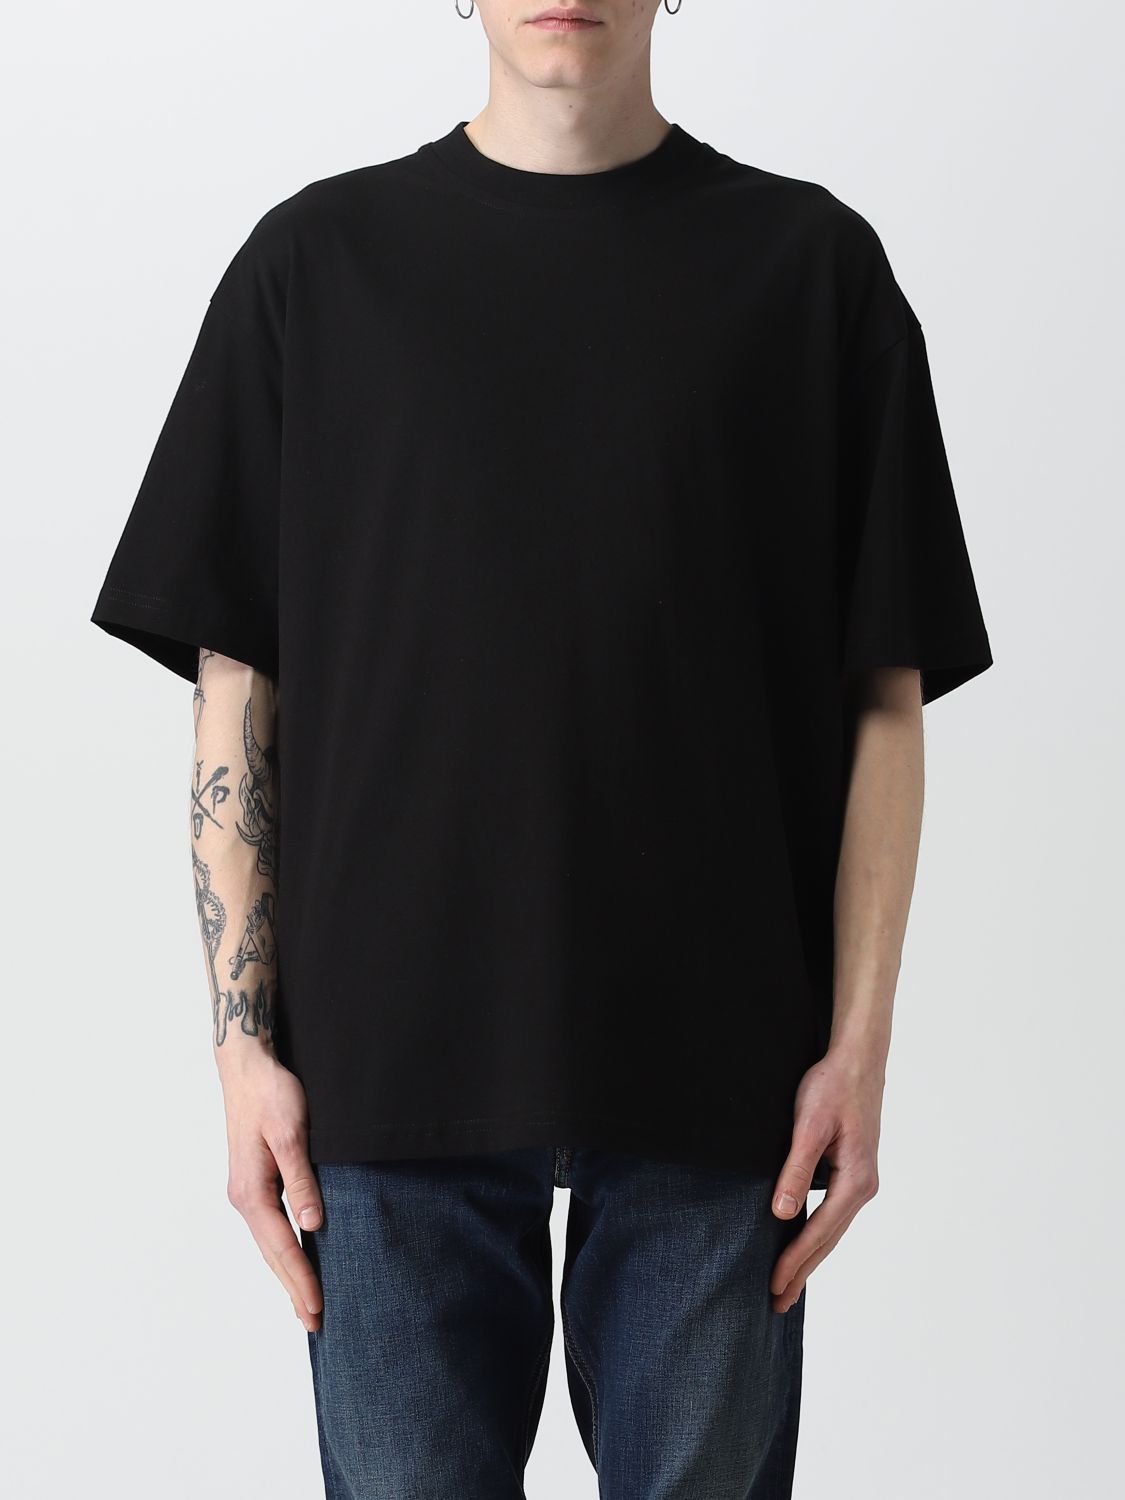 spreiding Relatie Behoefte aan DIESEL: t-shirt for man - Black | Diesel t-shirt A082320HGAM online on  GIGLIO.COM